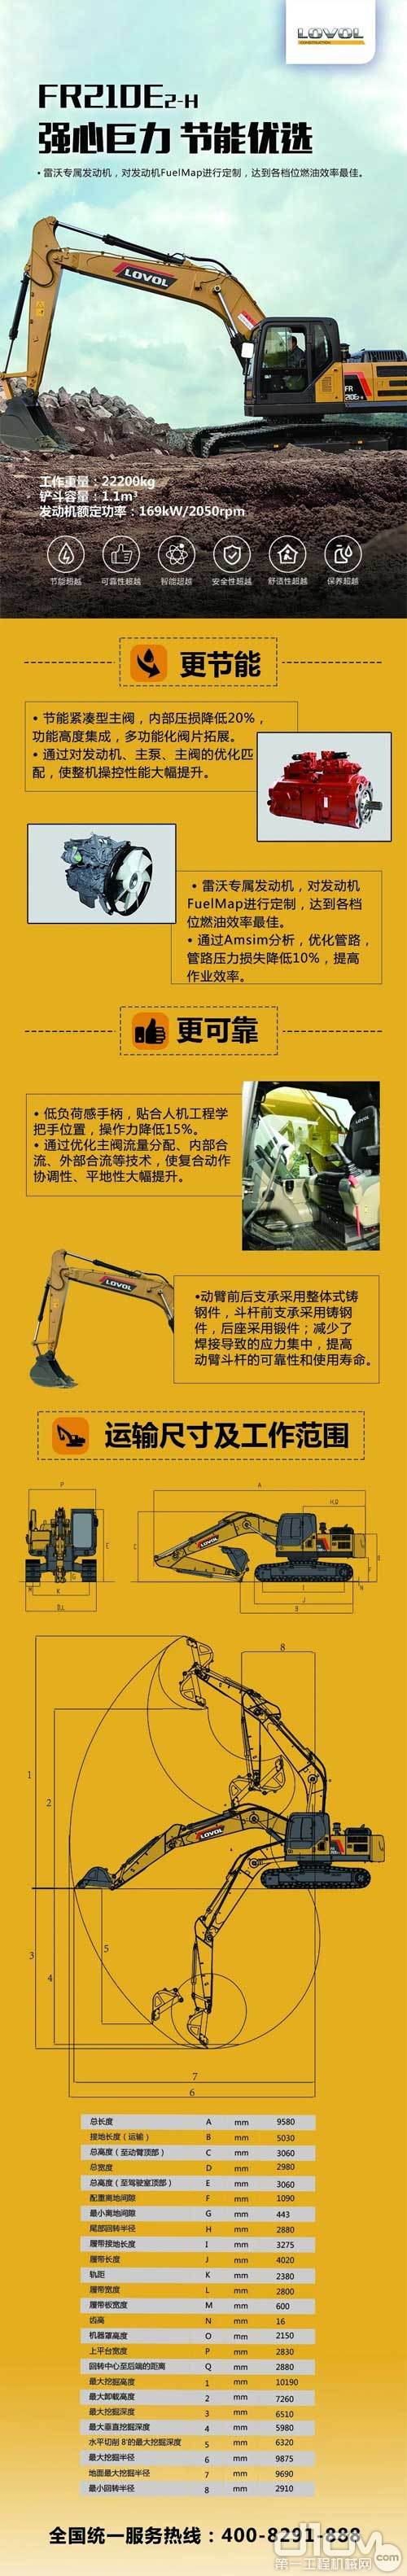 新品雷沃FR210E2-H挖掘机海报